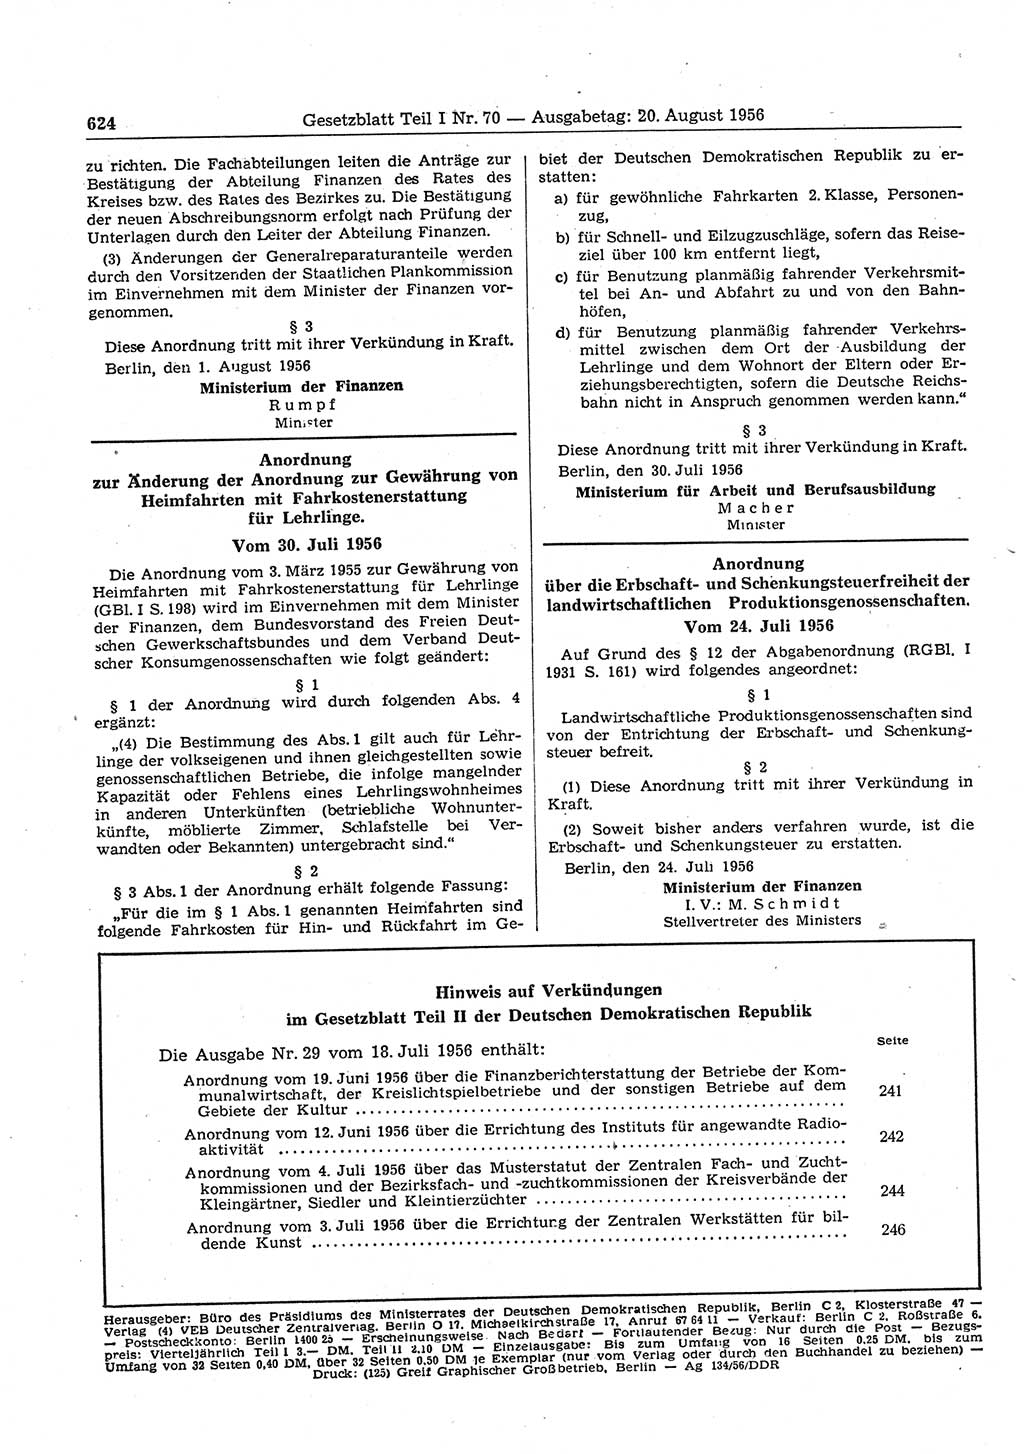 Gesetzblatt (GBl.) der Deutschen Demokratischen Republik (DDR) Teil Ⅰ 1956, Seite 624 (GBl. DDR Ⅰ 1956, S. 624)